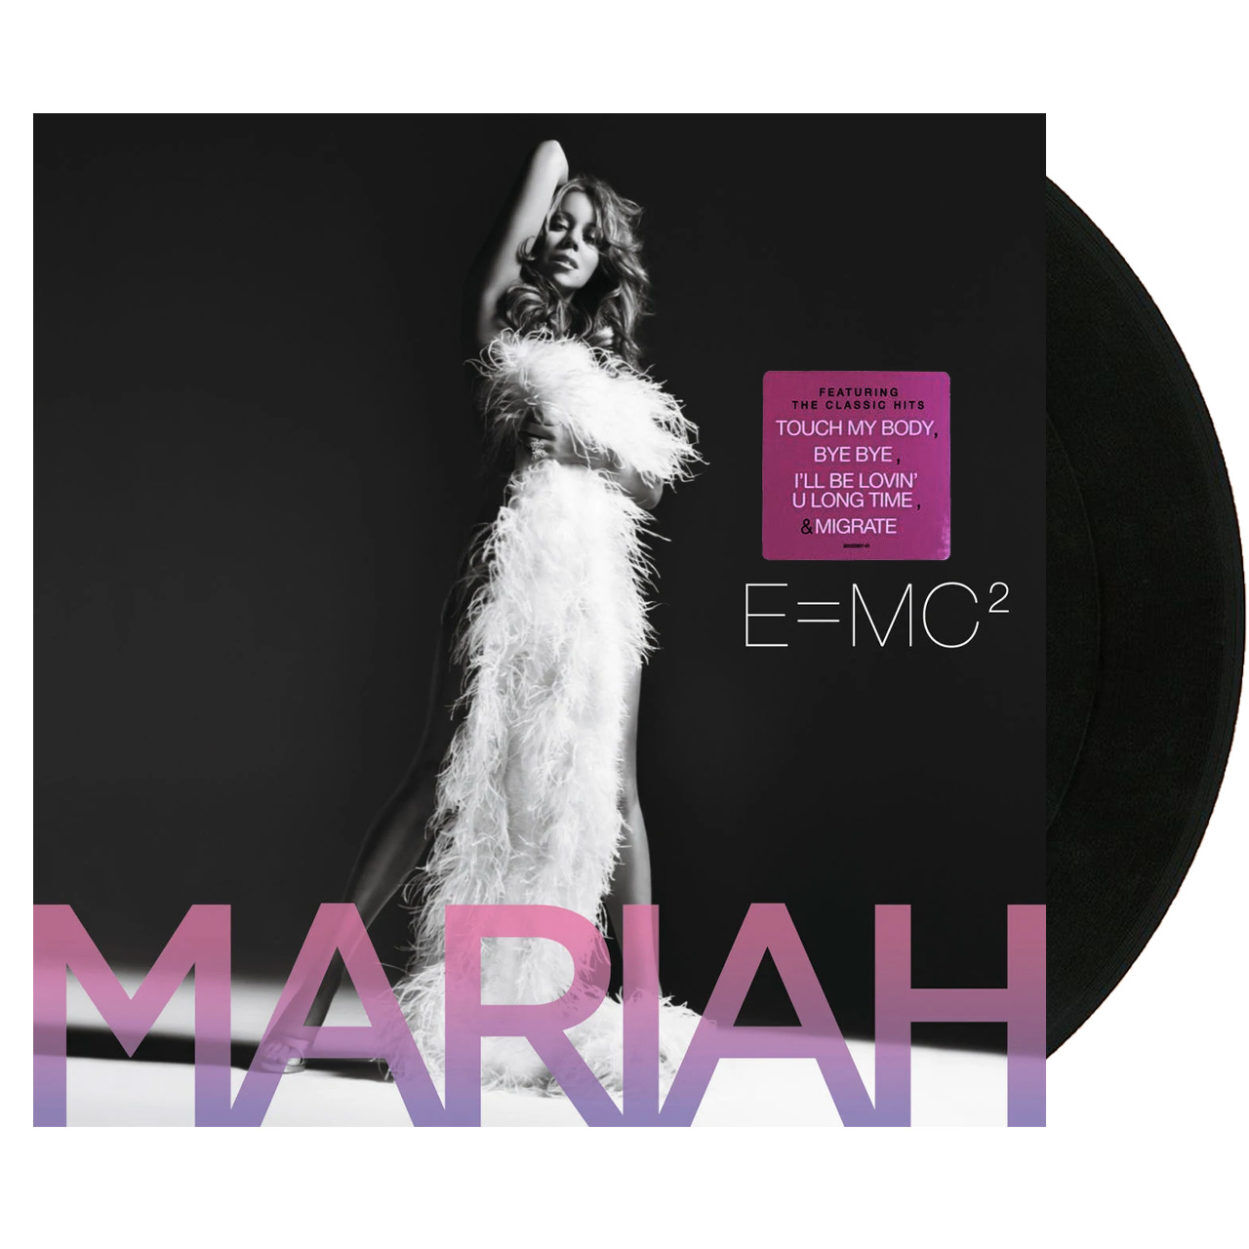 MARIAH CAREY E=MC2 Vinyl